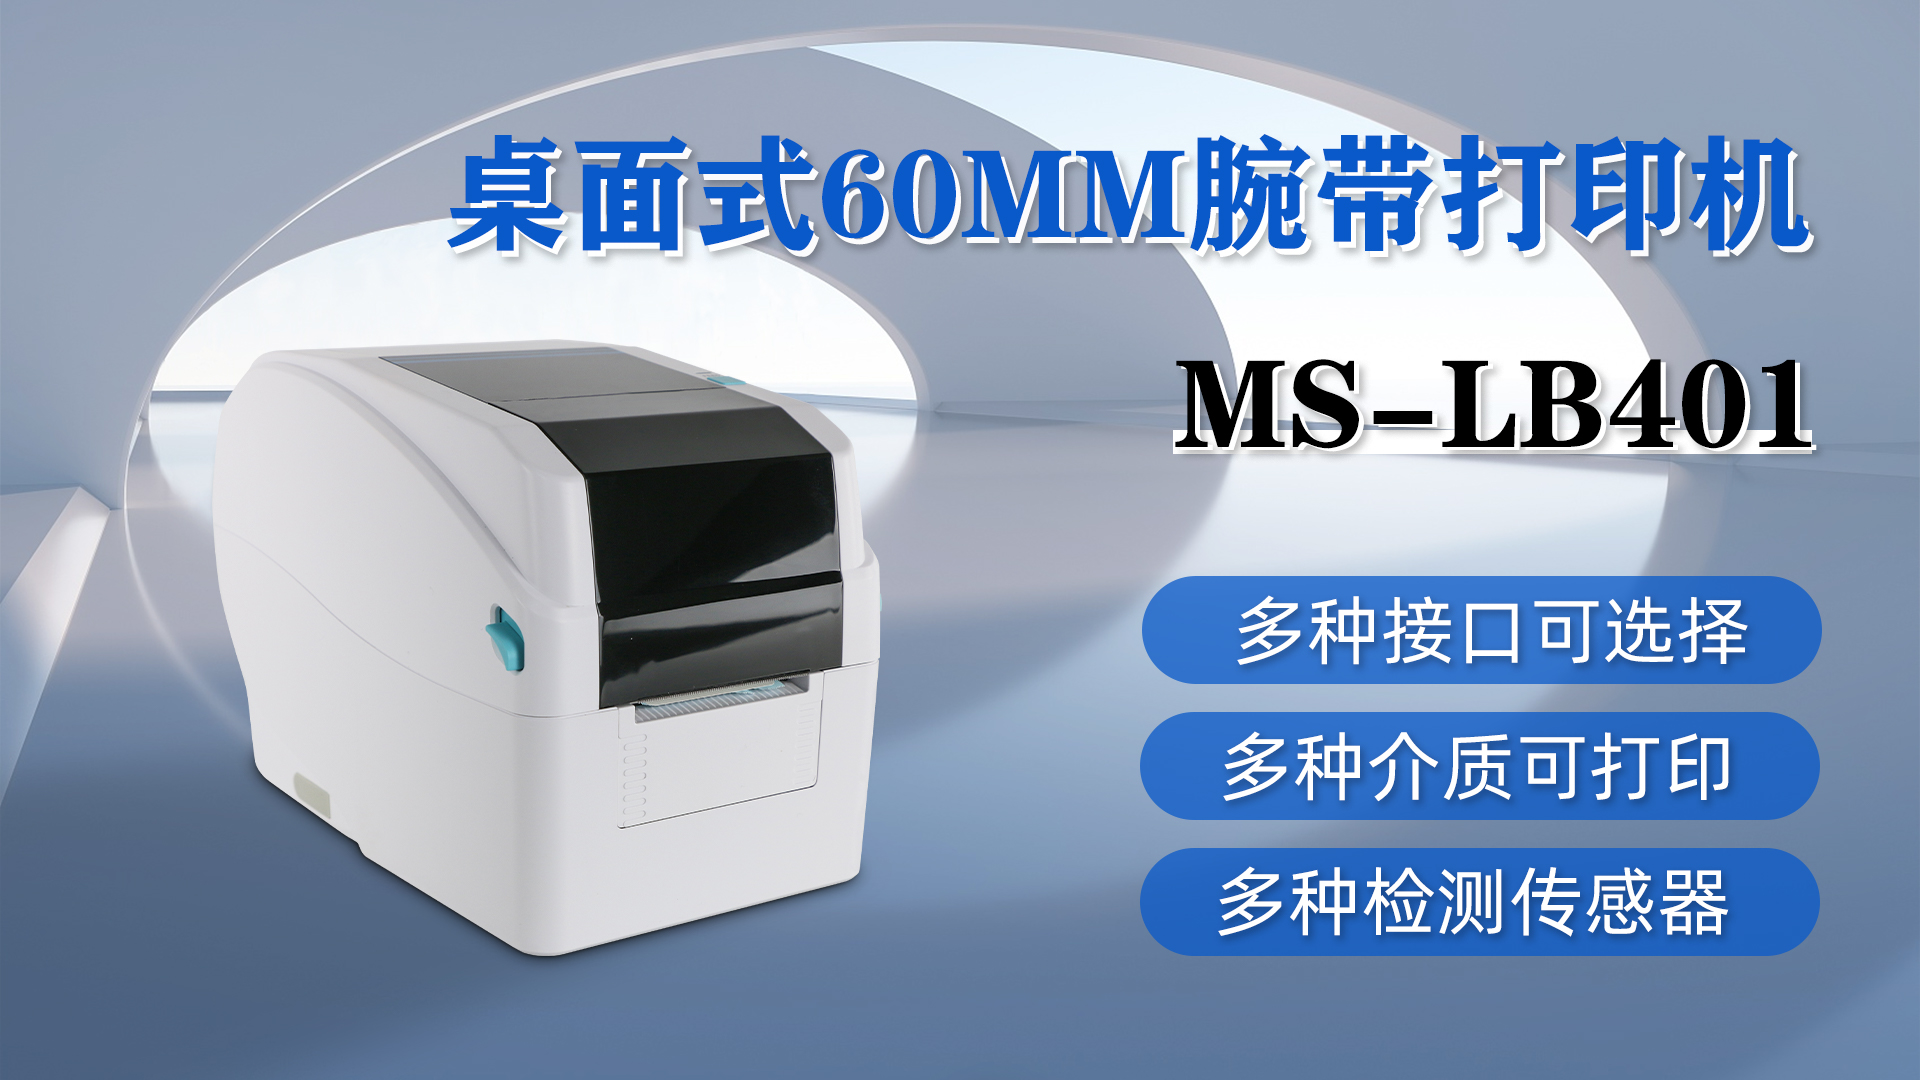 美松MS-LB401的产品特点以及应用领域